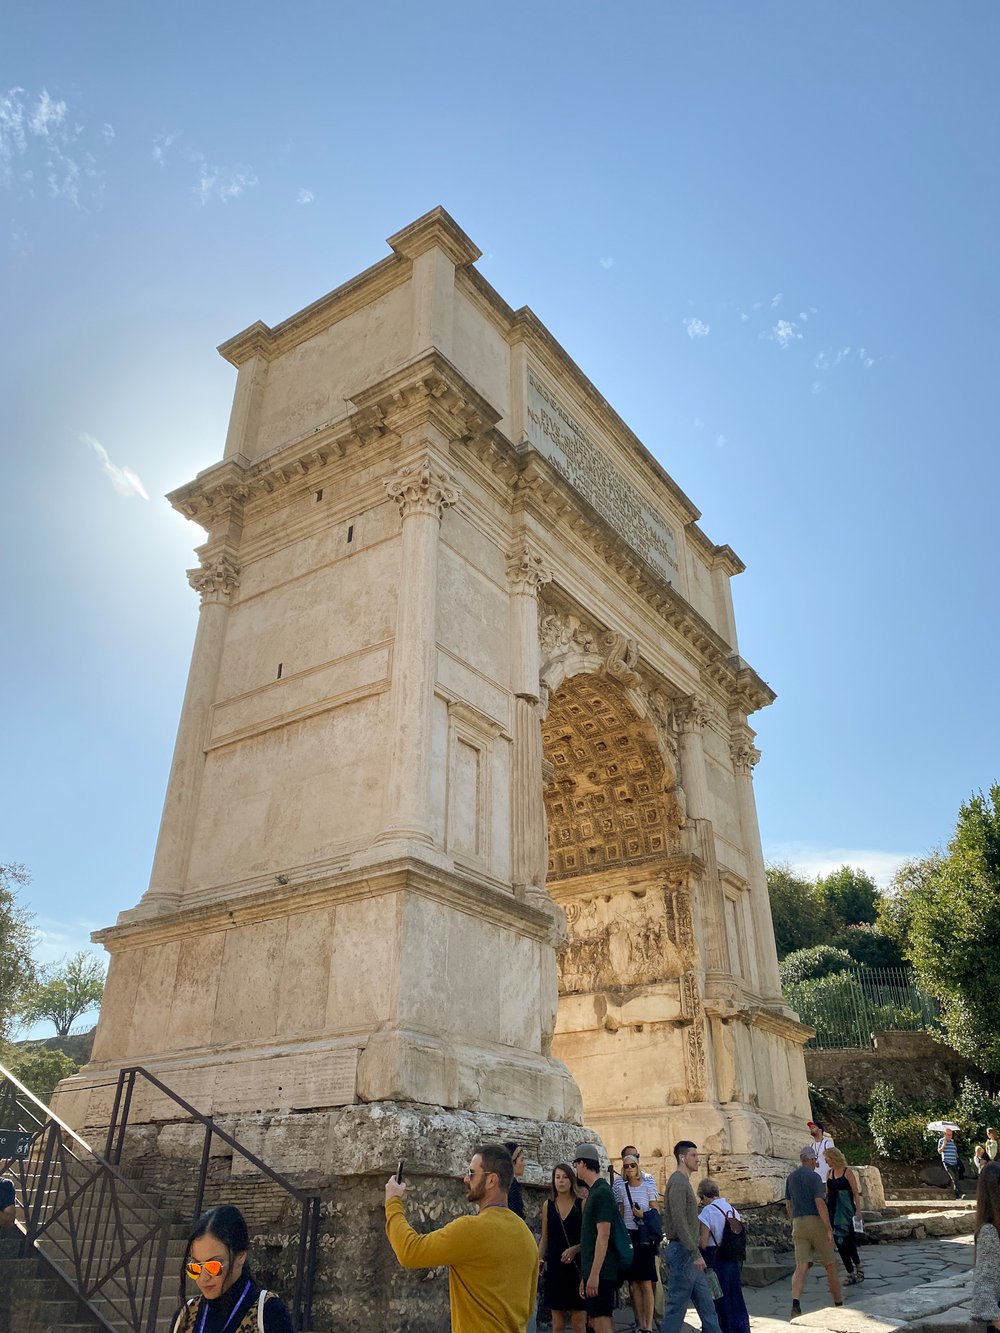 Arch of Titus, Roman Forum